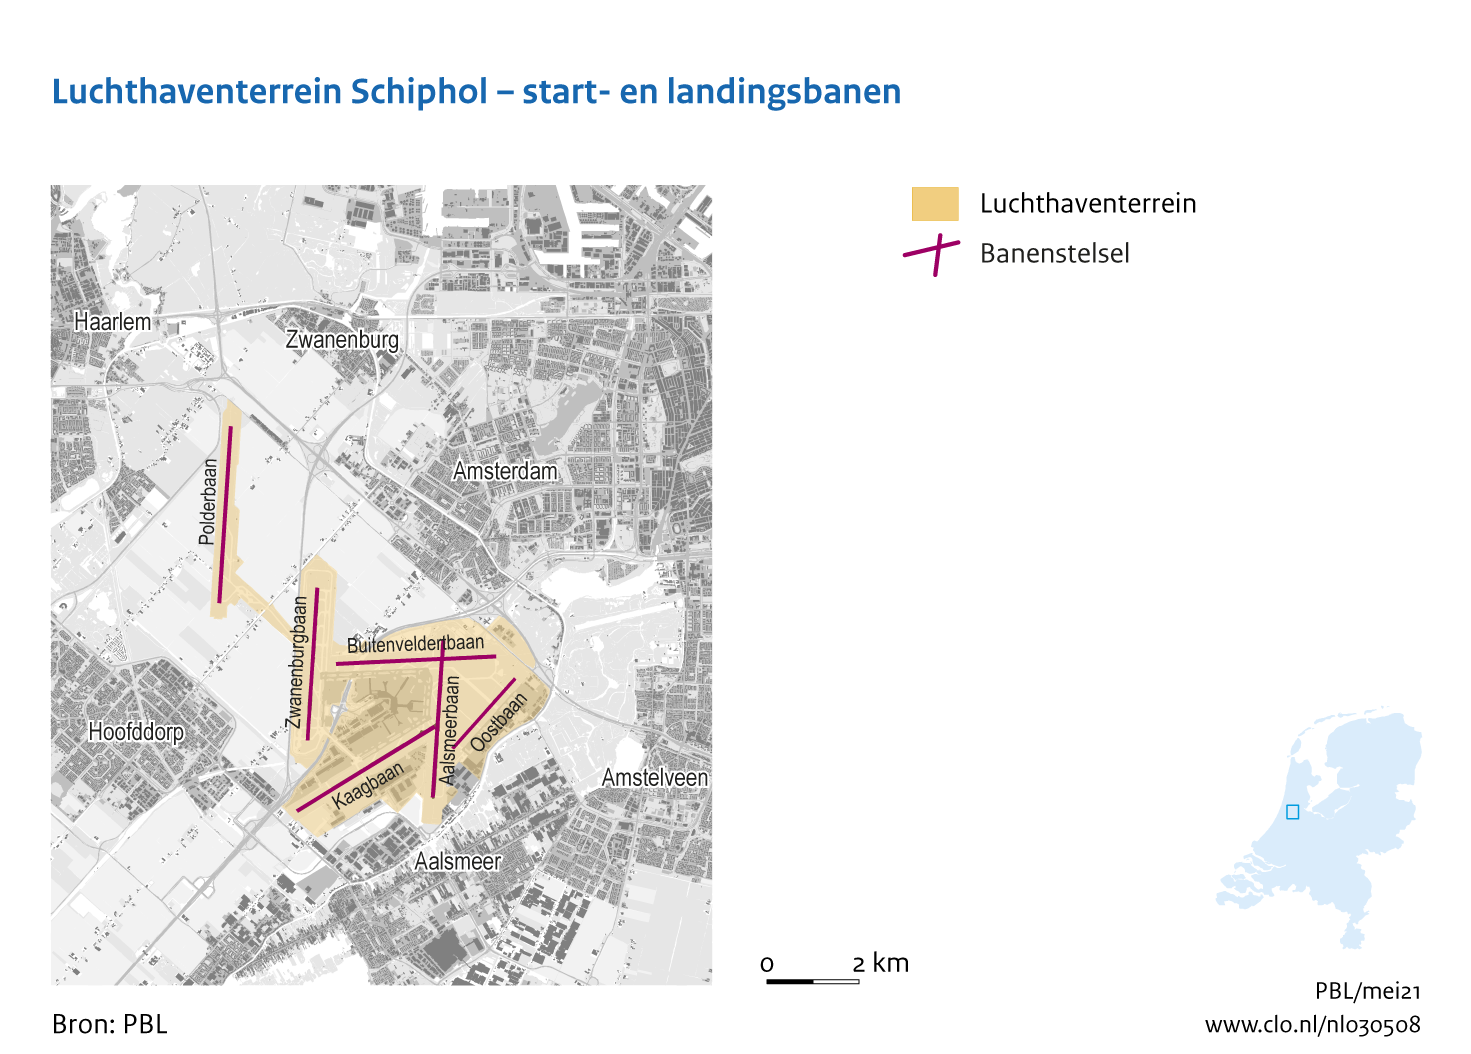 Figuur Luchthaventerrein Schiphol - start- en landingsbanen. In de rest van de tekst wordt deze figuur uitgebreider uitgelegd.